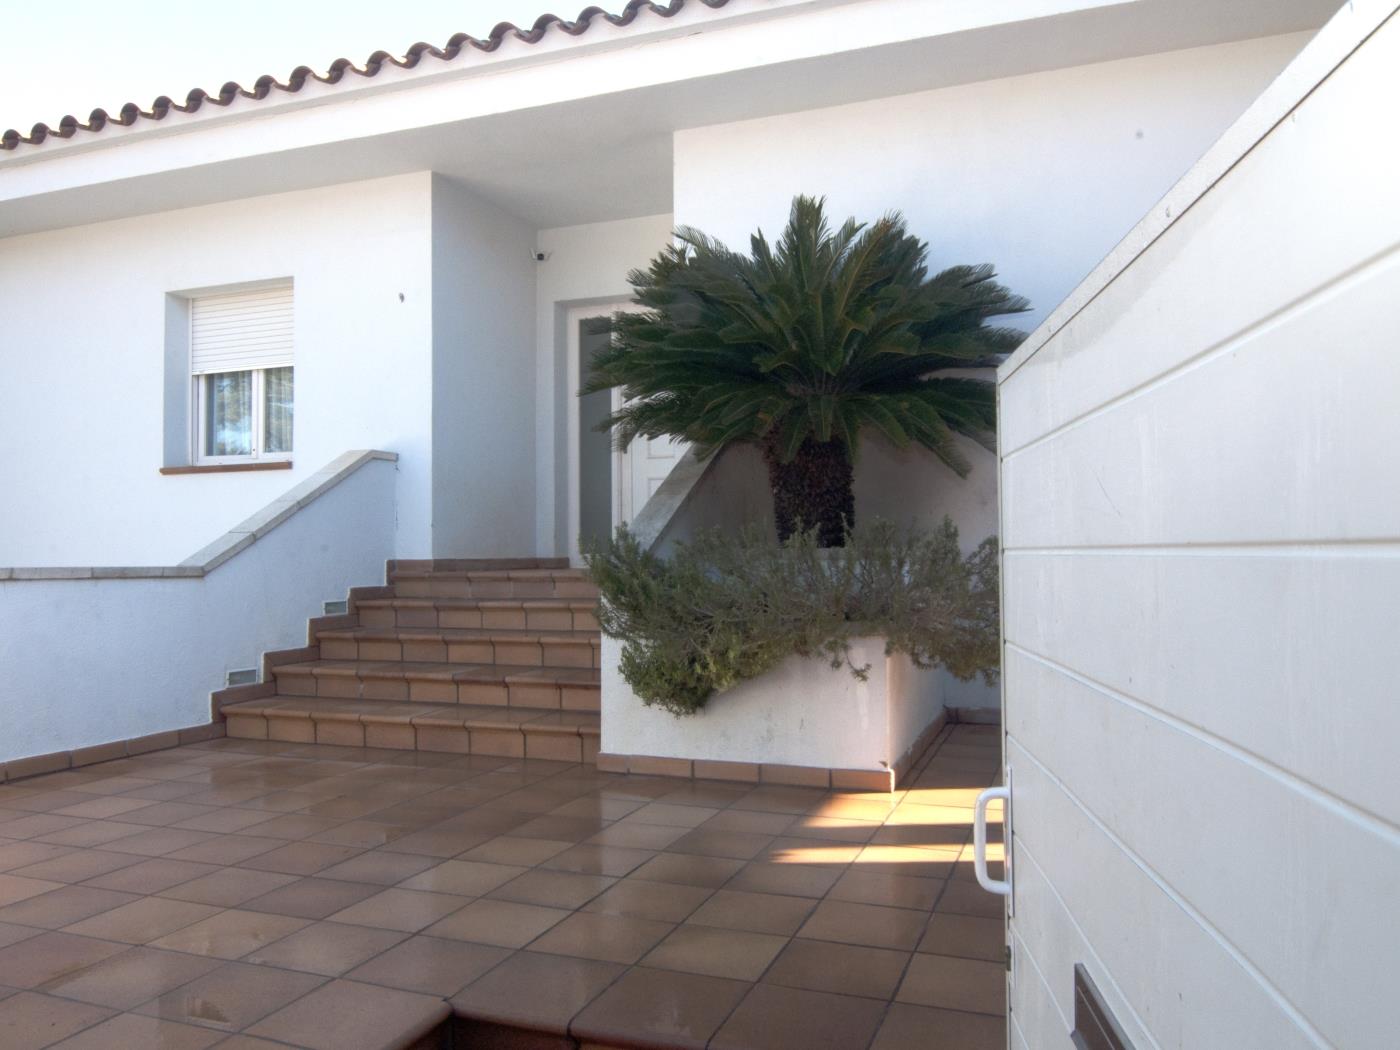 Magnifique villa avec piscine privée, jardin et barbecue à l'Escala